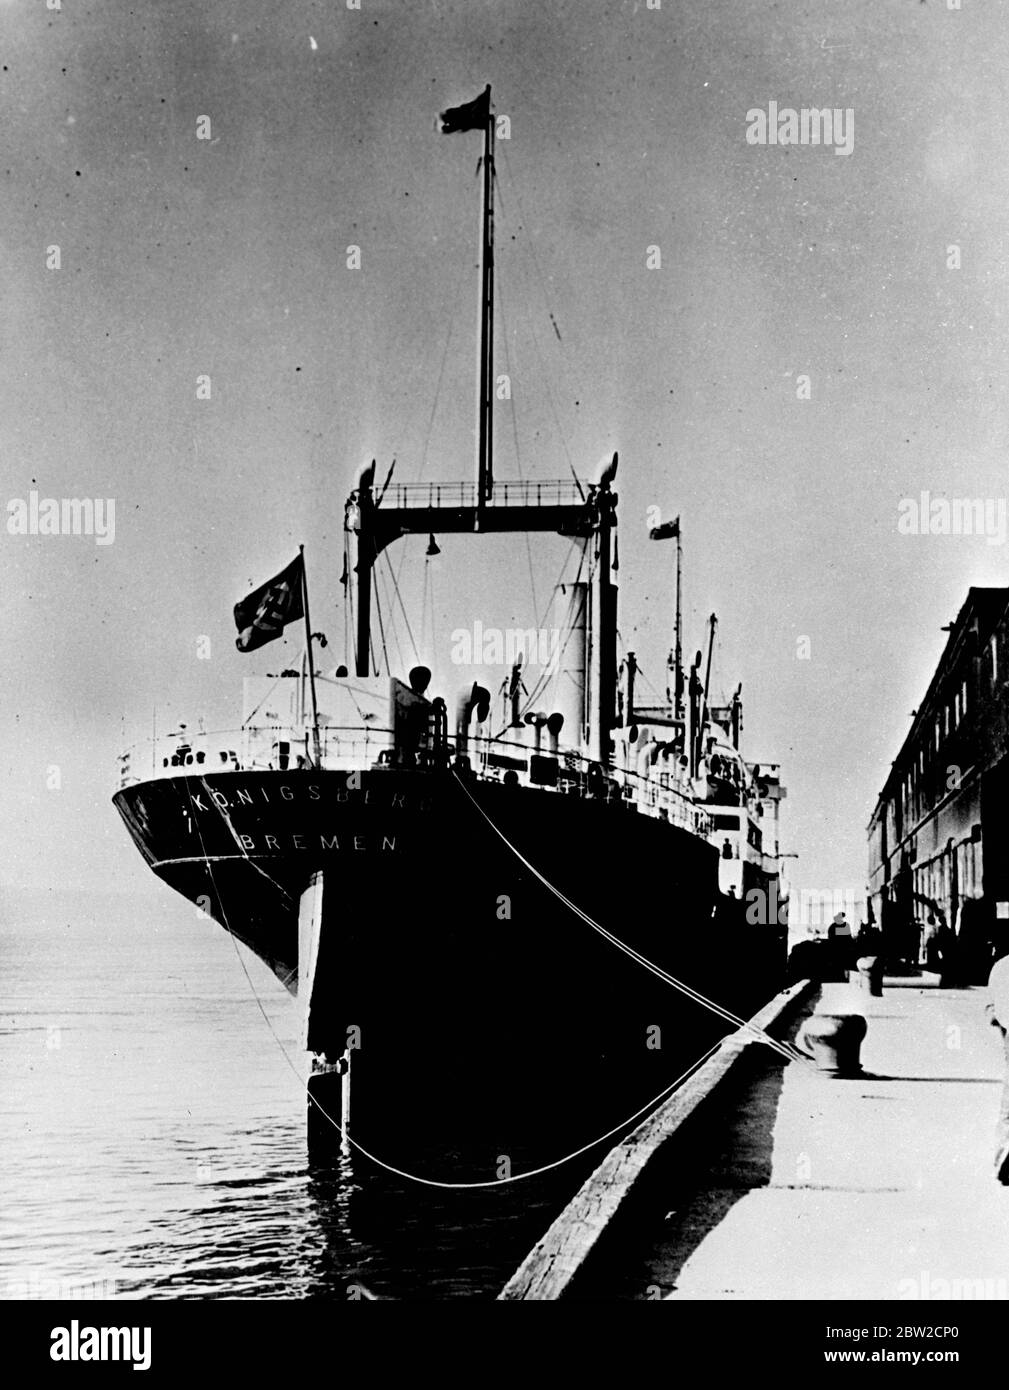 Le navire allemand a arrimé à québec, en août 26, après que les autorités canadiennes l'ont embarqué à 5 km en dessous de québec et ont forcé son maître à se retourner en descendant le Saint-Laurent. Dans sa hâte de rentrer en Allemagne conformément aux ordres d'Hitler, le navire n'a pas déchargé une cargaison d'oxyde de zinc qui avait été payée à l'avance par une entreprise montréalaise. L'Amirauté a émis un mandat de vol sur lequel le navire a été détenu. 26 août 1939 Banque D'Images